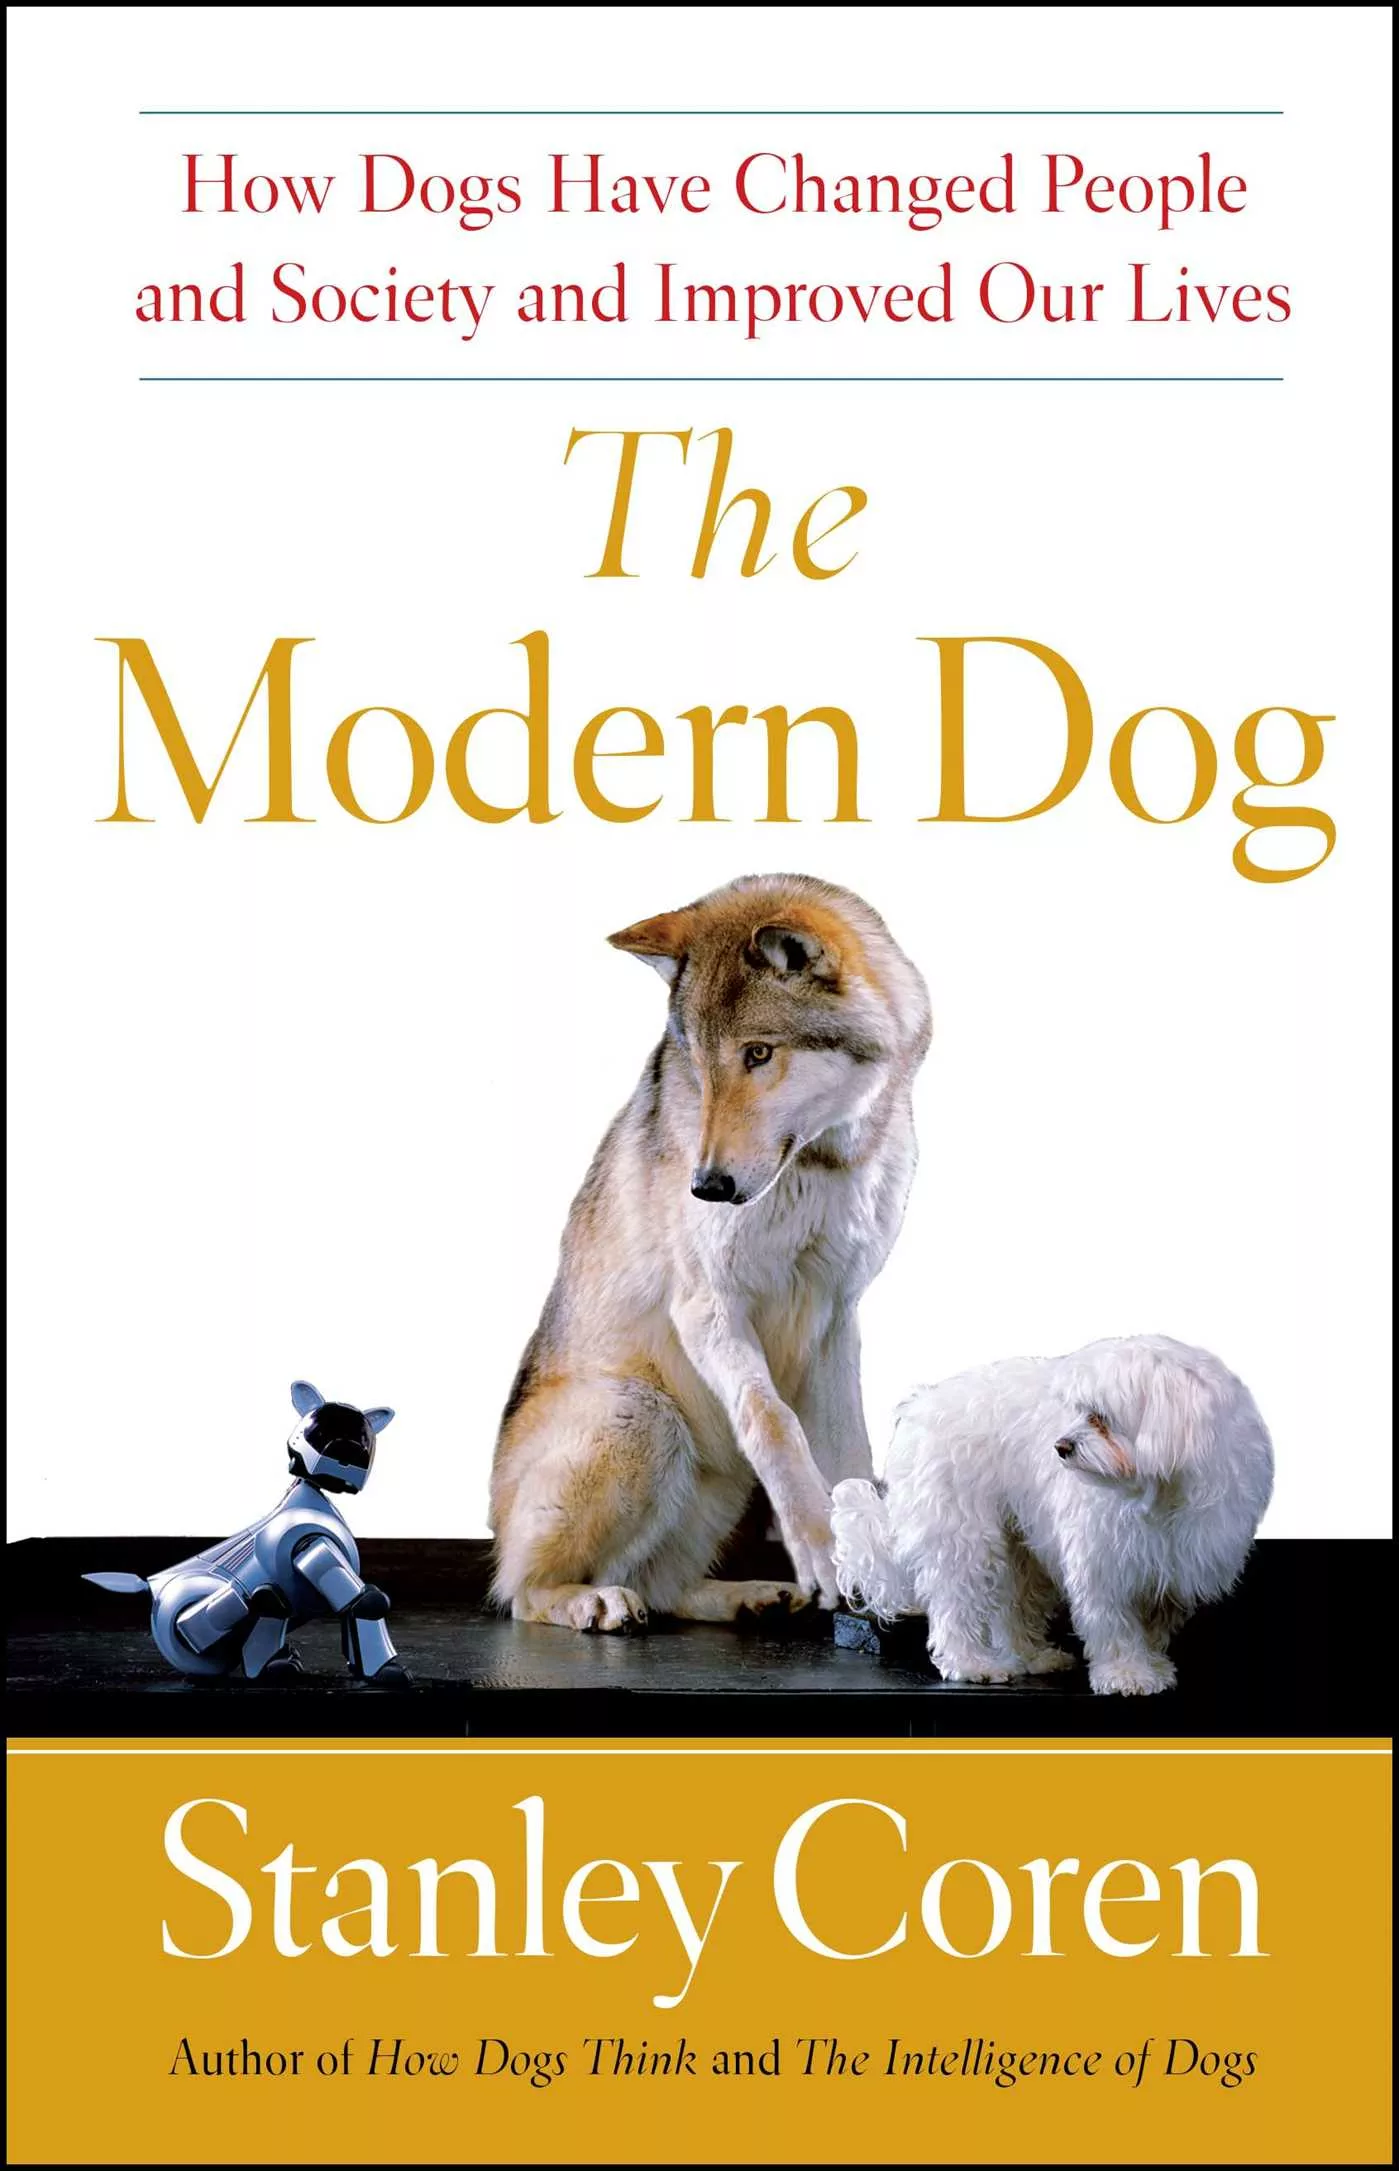 228: Stanley Coren – “The Modern Dog”